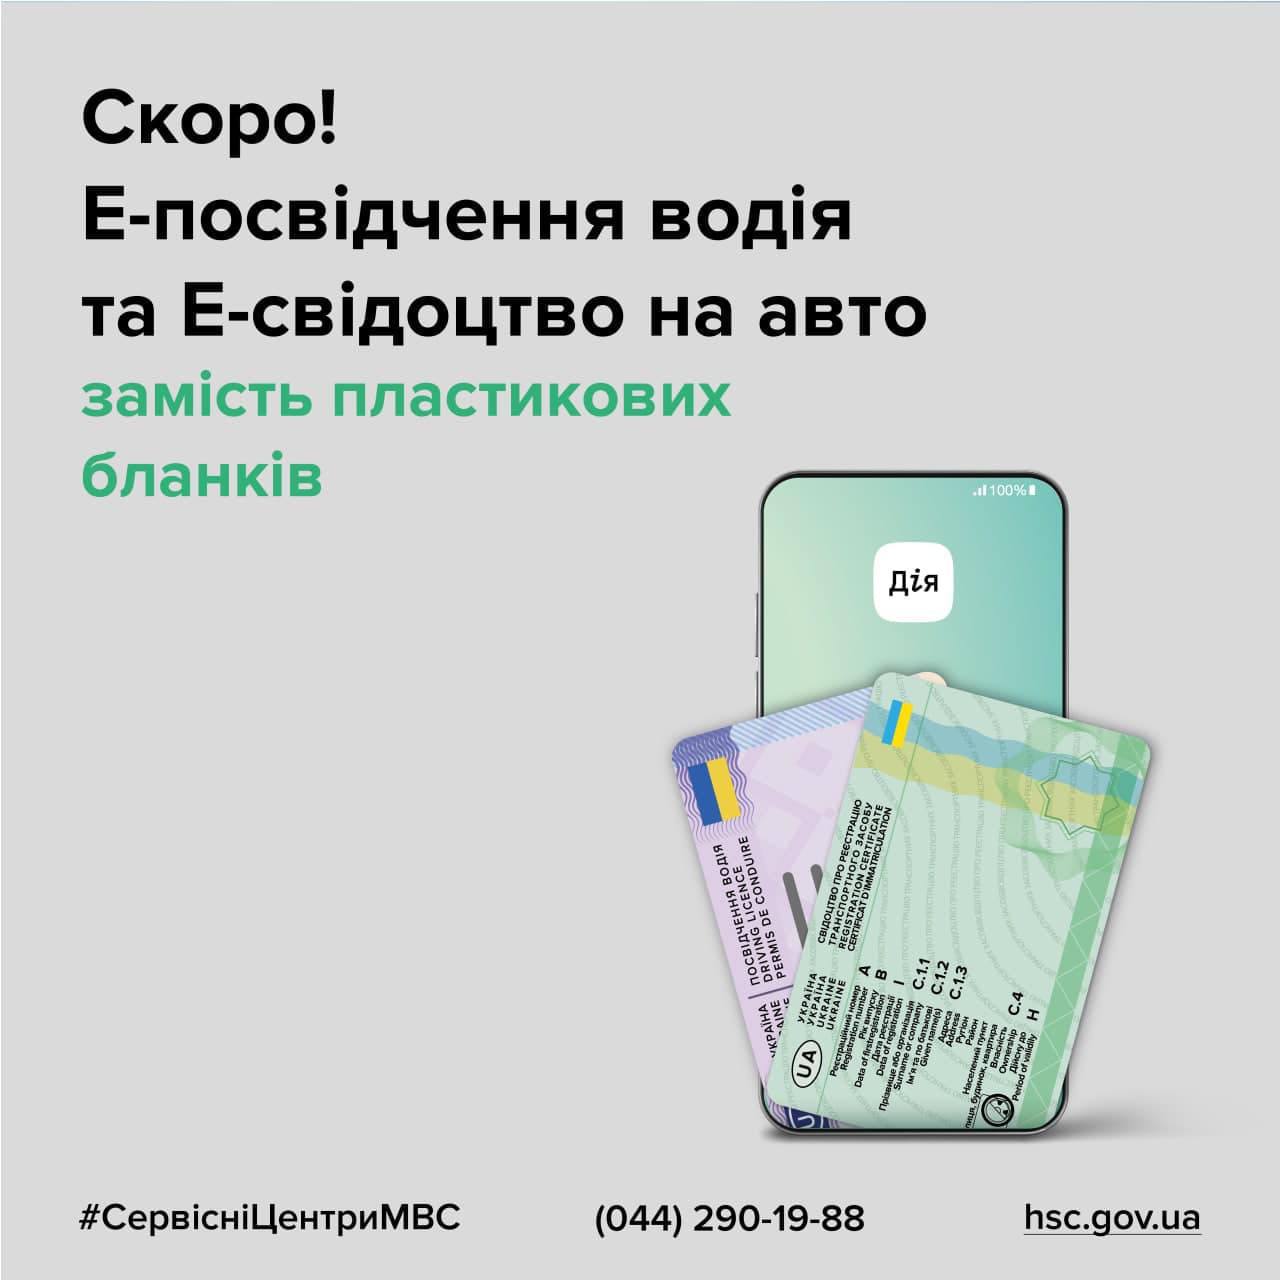 С 14 декабря украинцы смогут регистрировать авто или оформить водительское удостоверение без использования пластиковых бланков